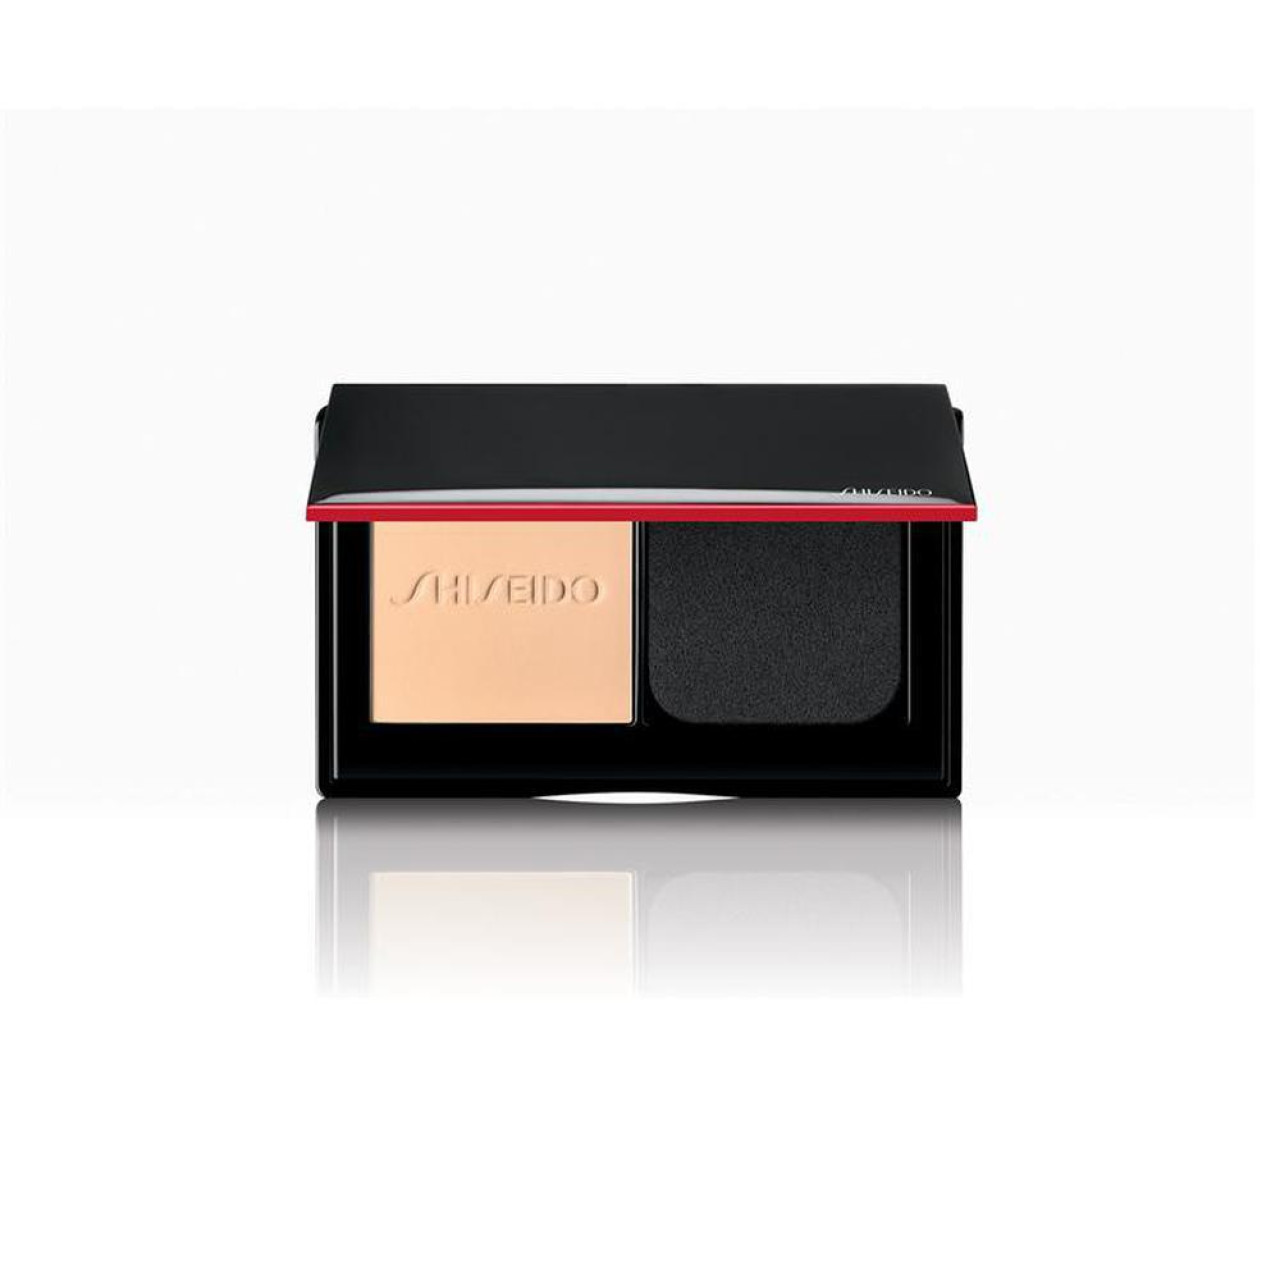 Shiseido synchro skin powder self-refreshing foundation 130